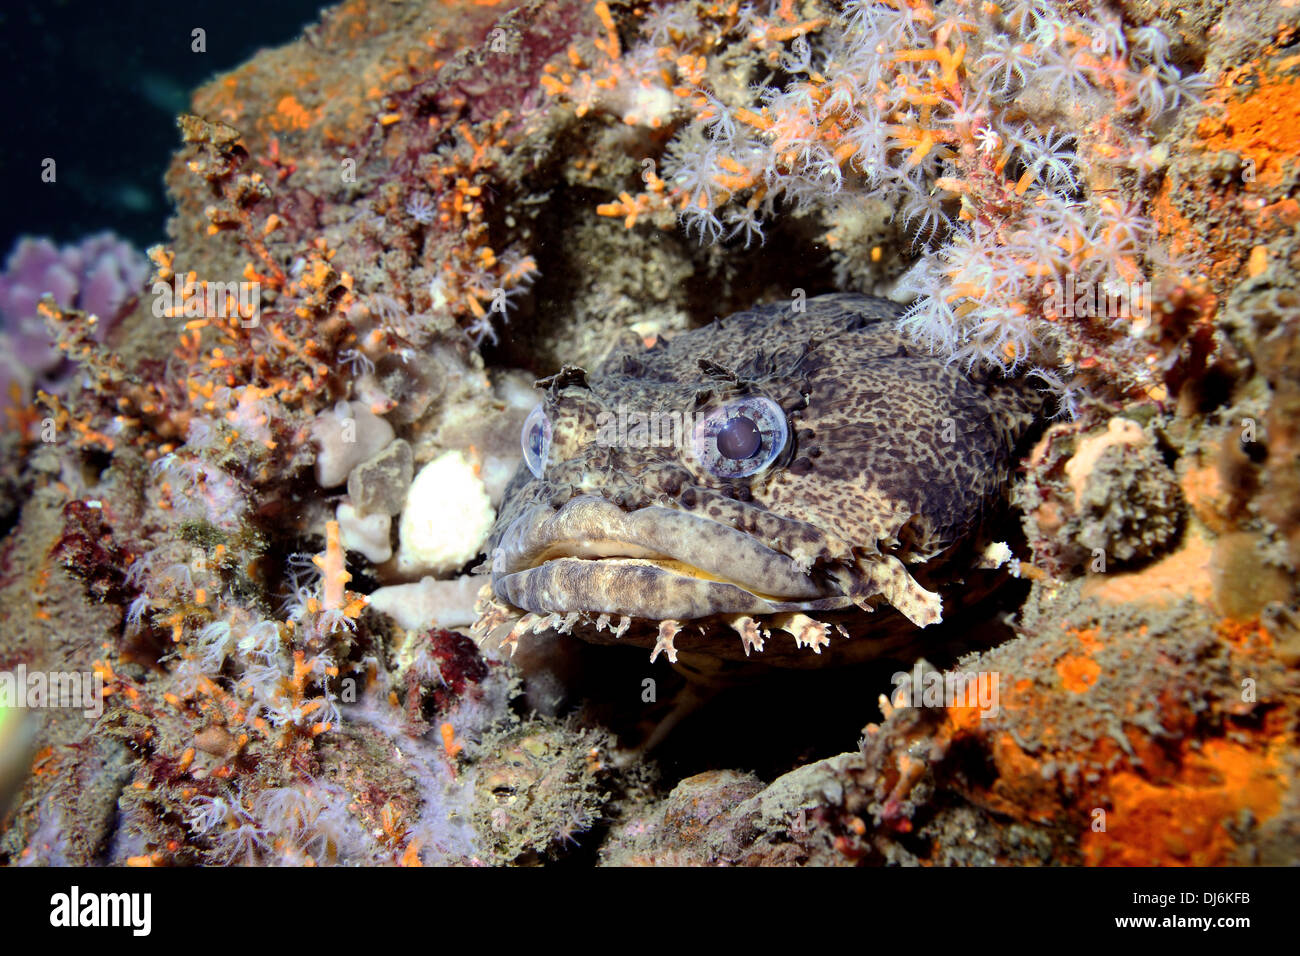 Un poisson crapaud parfaitement camouflé se trouve dans la multitude d'organismes marins qui vivent dans une vieille épave Banque D'Images